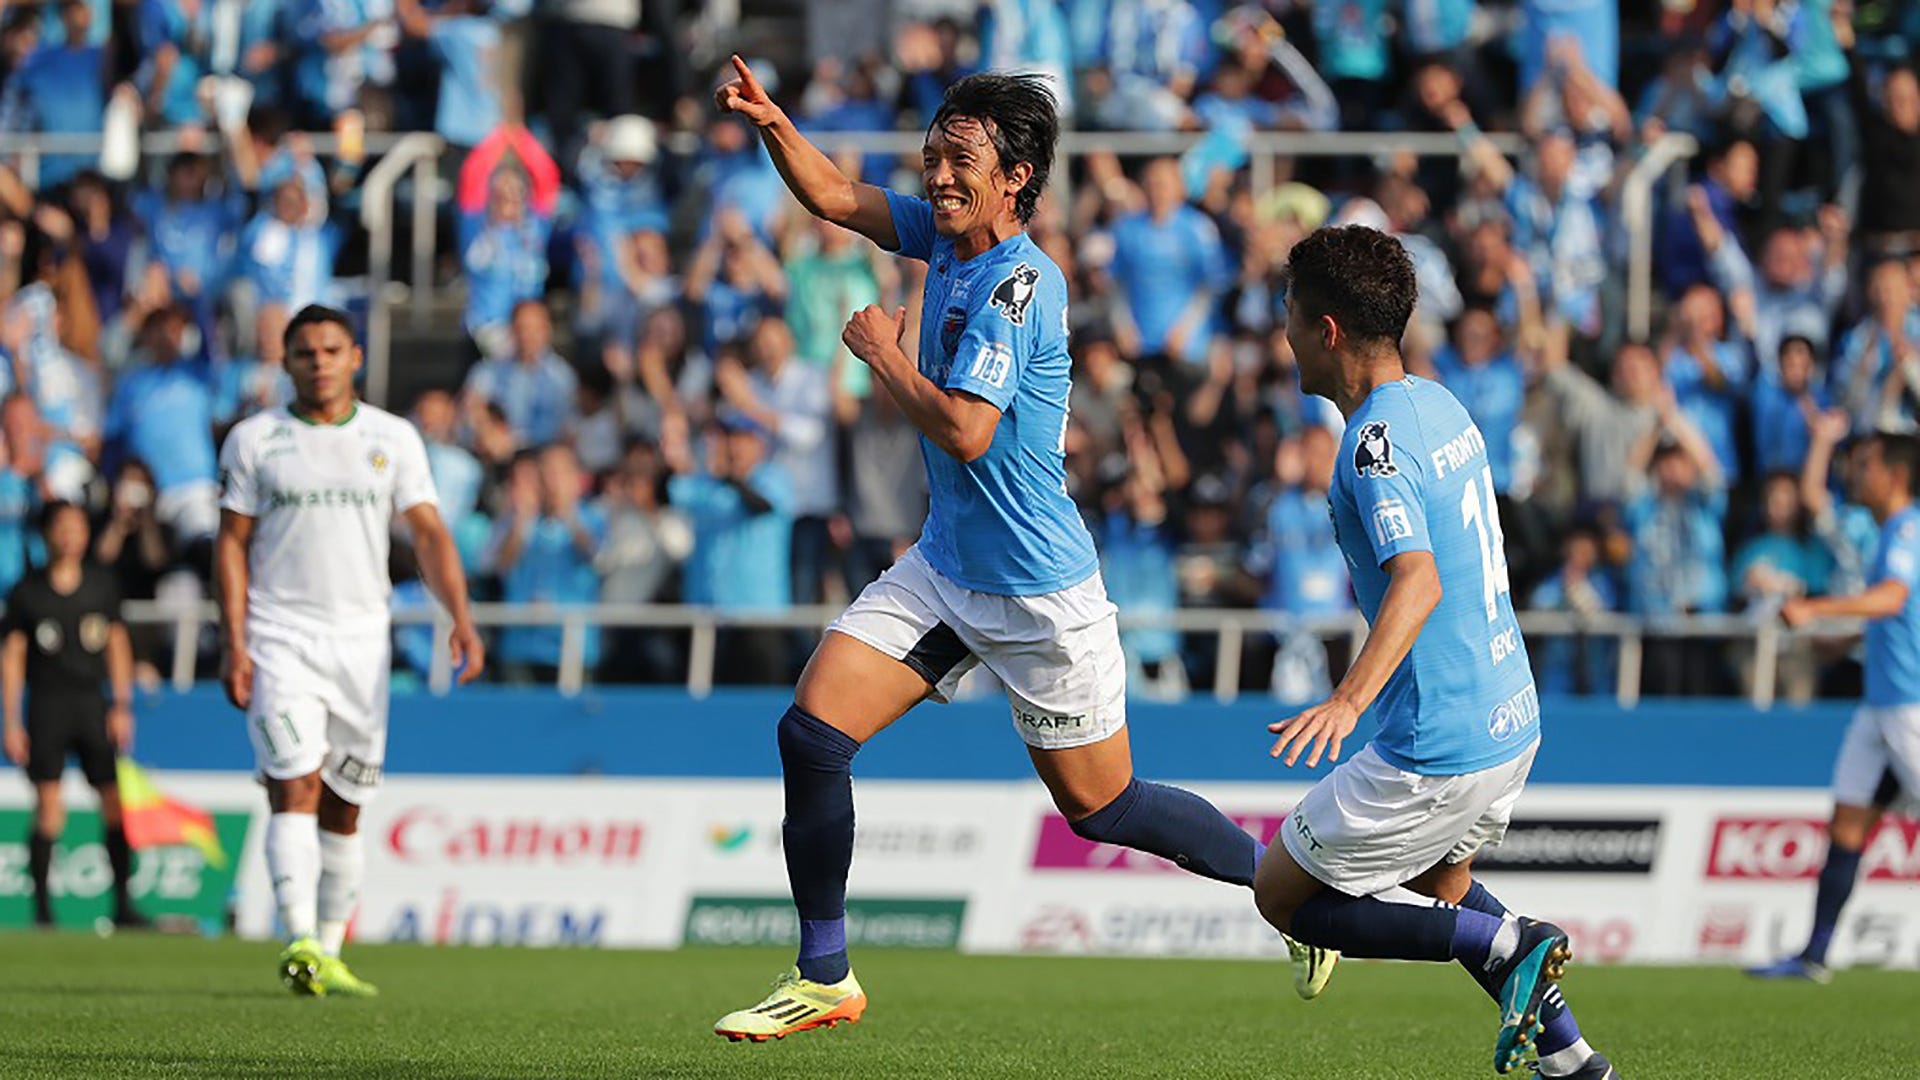 動画 中村俊輔が横浜fc加入後初ゴール 左足の強烈なミドルシュート Goal Com 日本